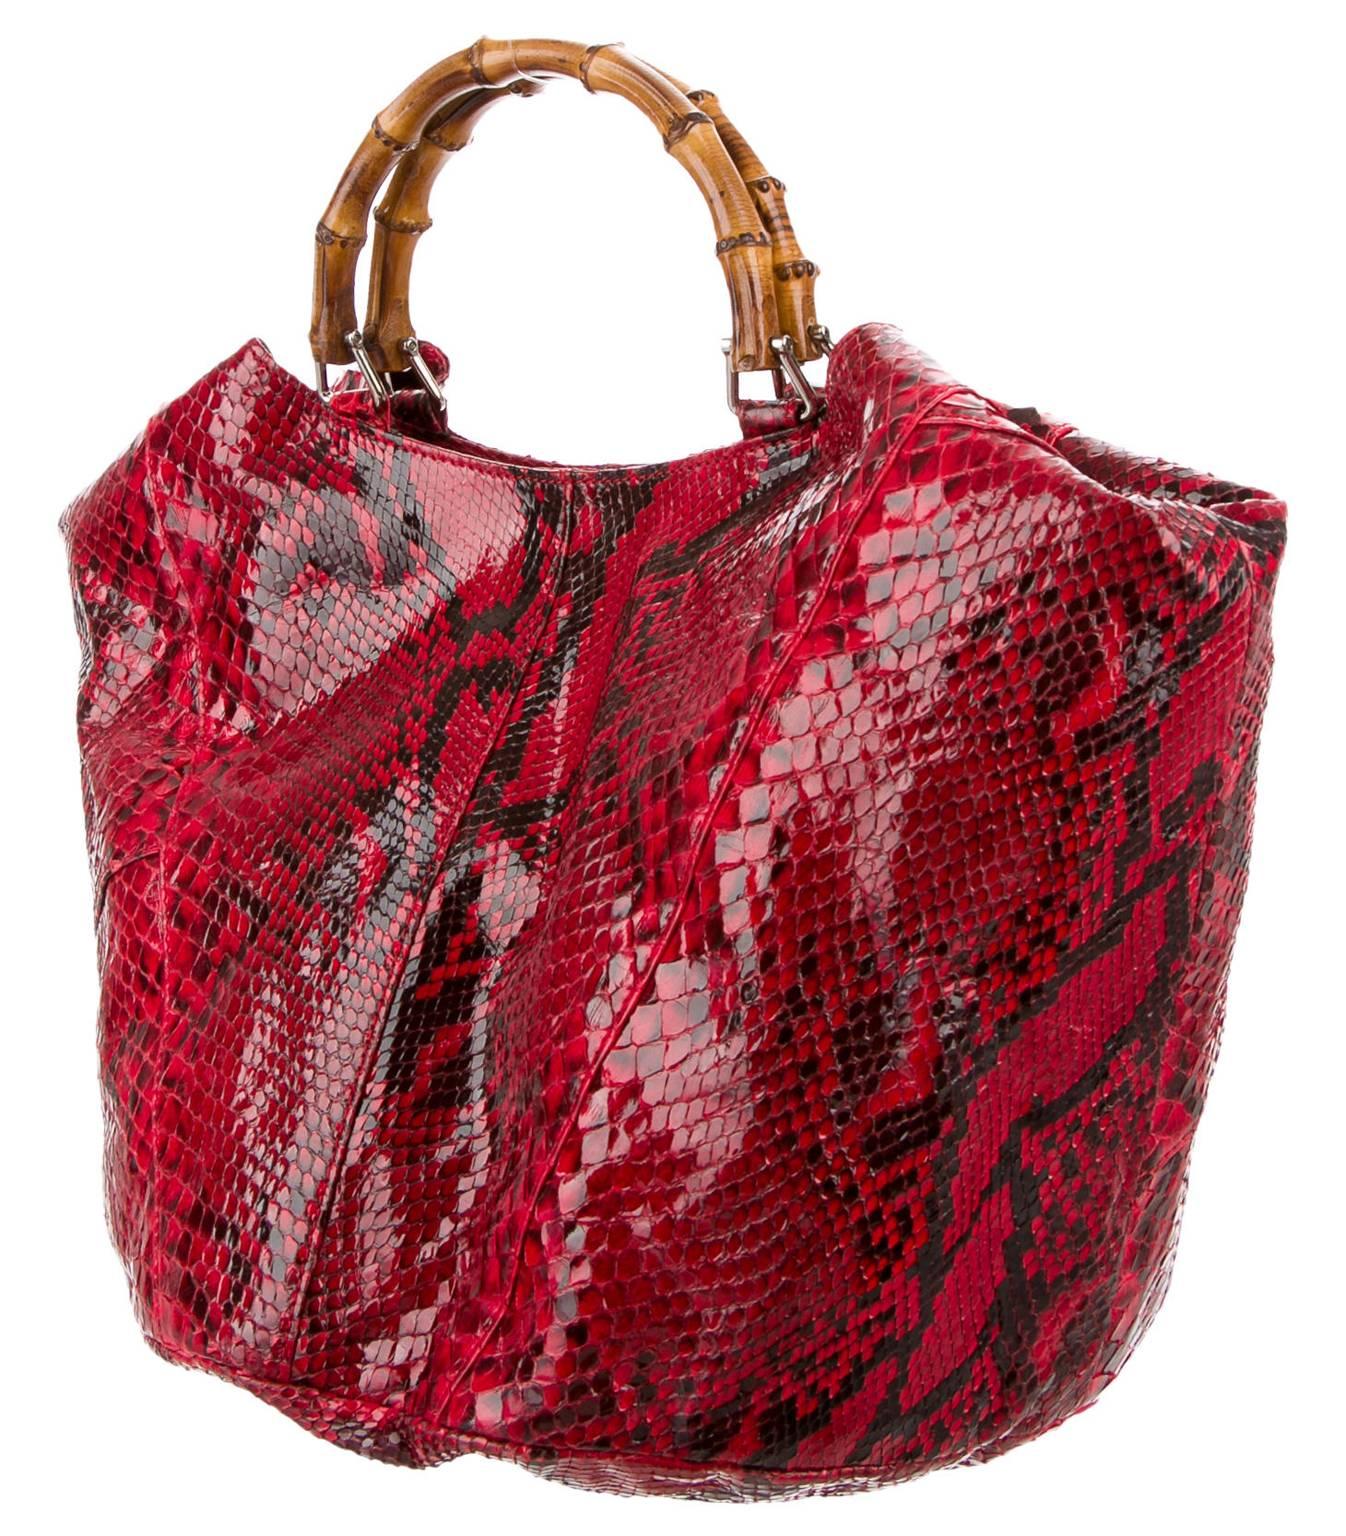 L'incroyable et iconique sac de campagne de Kate Moss, Tom Ford pour Gucci, printemps-été 1996, en cuir python, d'un rouge rarissime et absolument magnifique !

Depuis 2005, Iconic Collections est l'un des principaux collectionneurs mondiaux de Tom